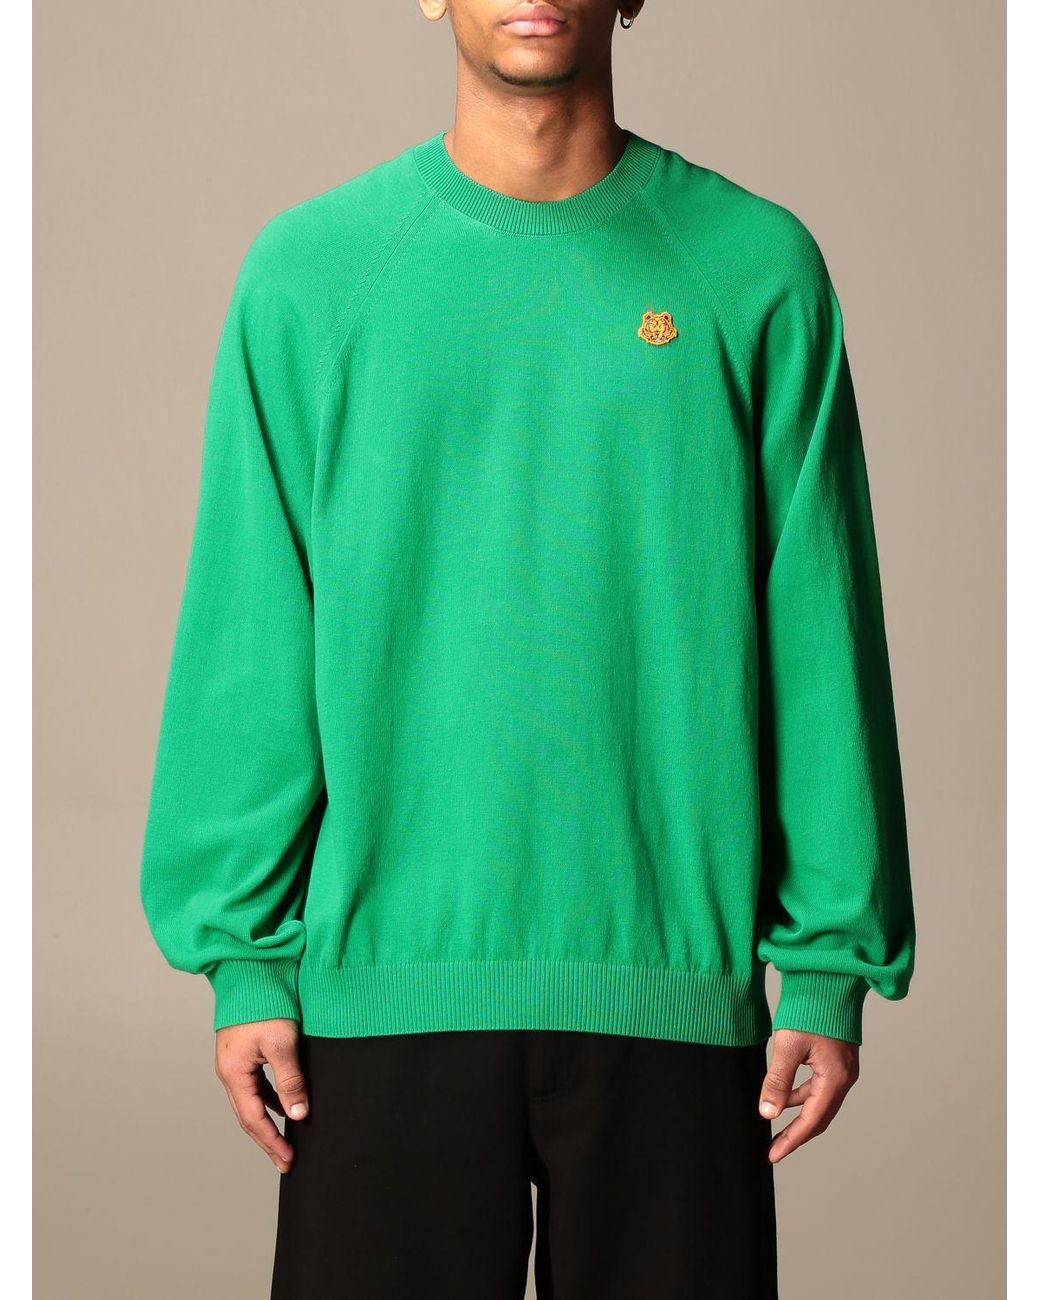 KENZO Sweater in Green for Men - Lyst